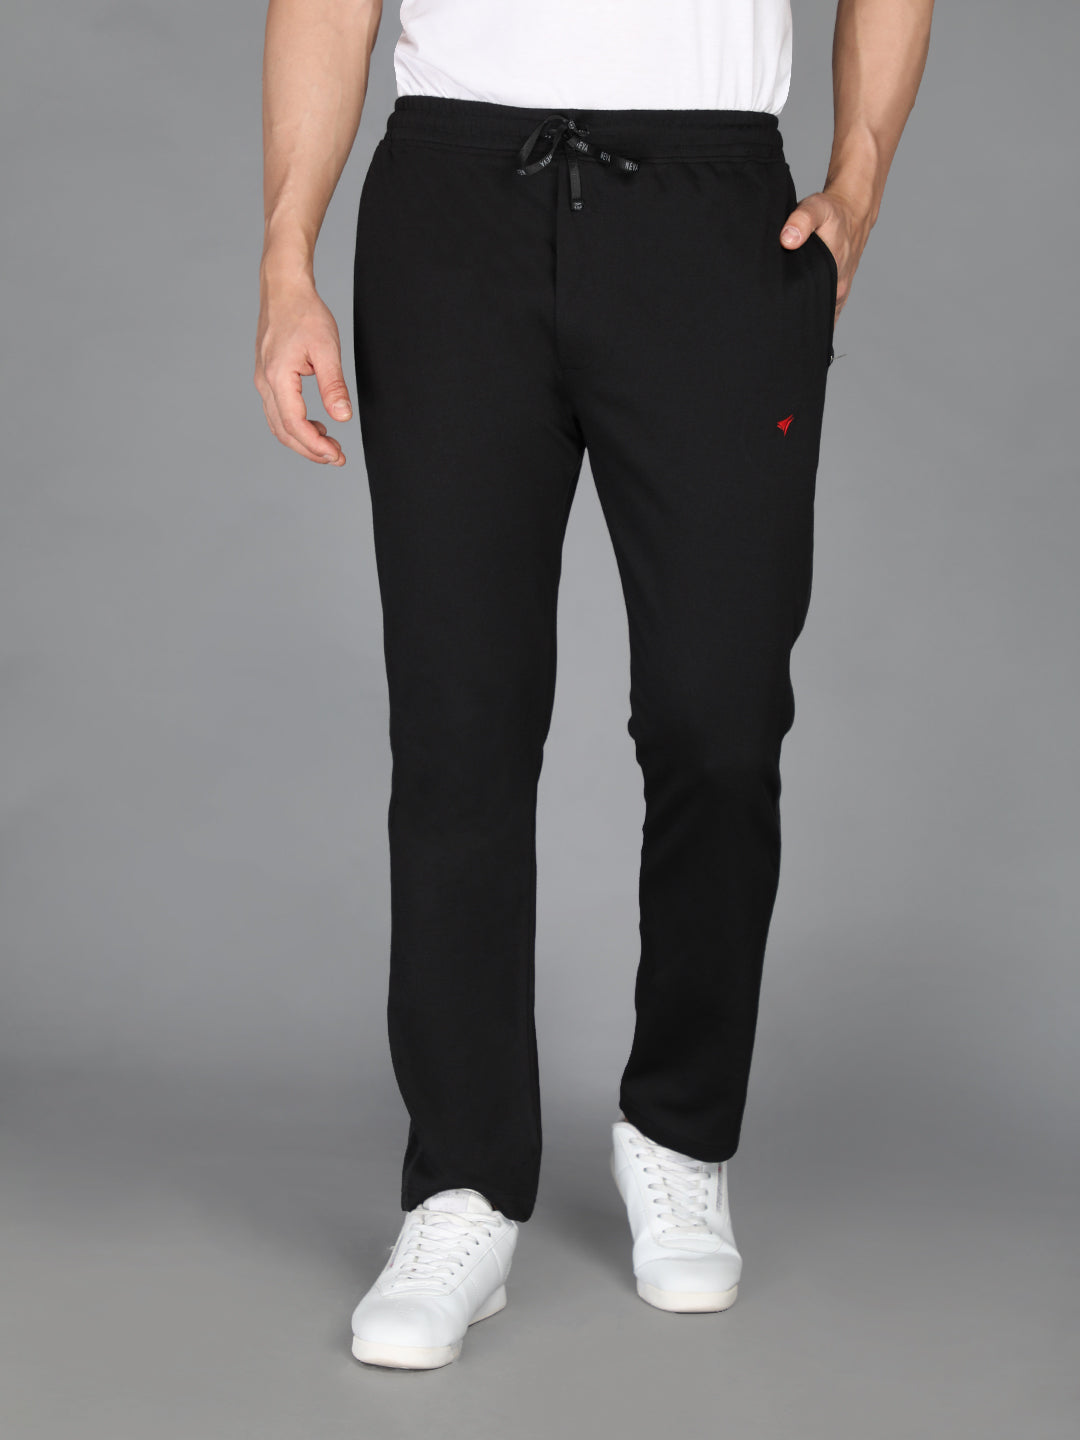 Neva Men's Basic Solid Color Track Pant-Black